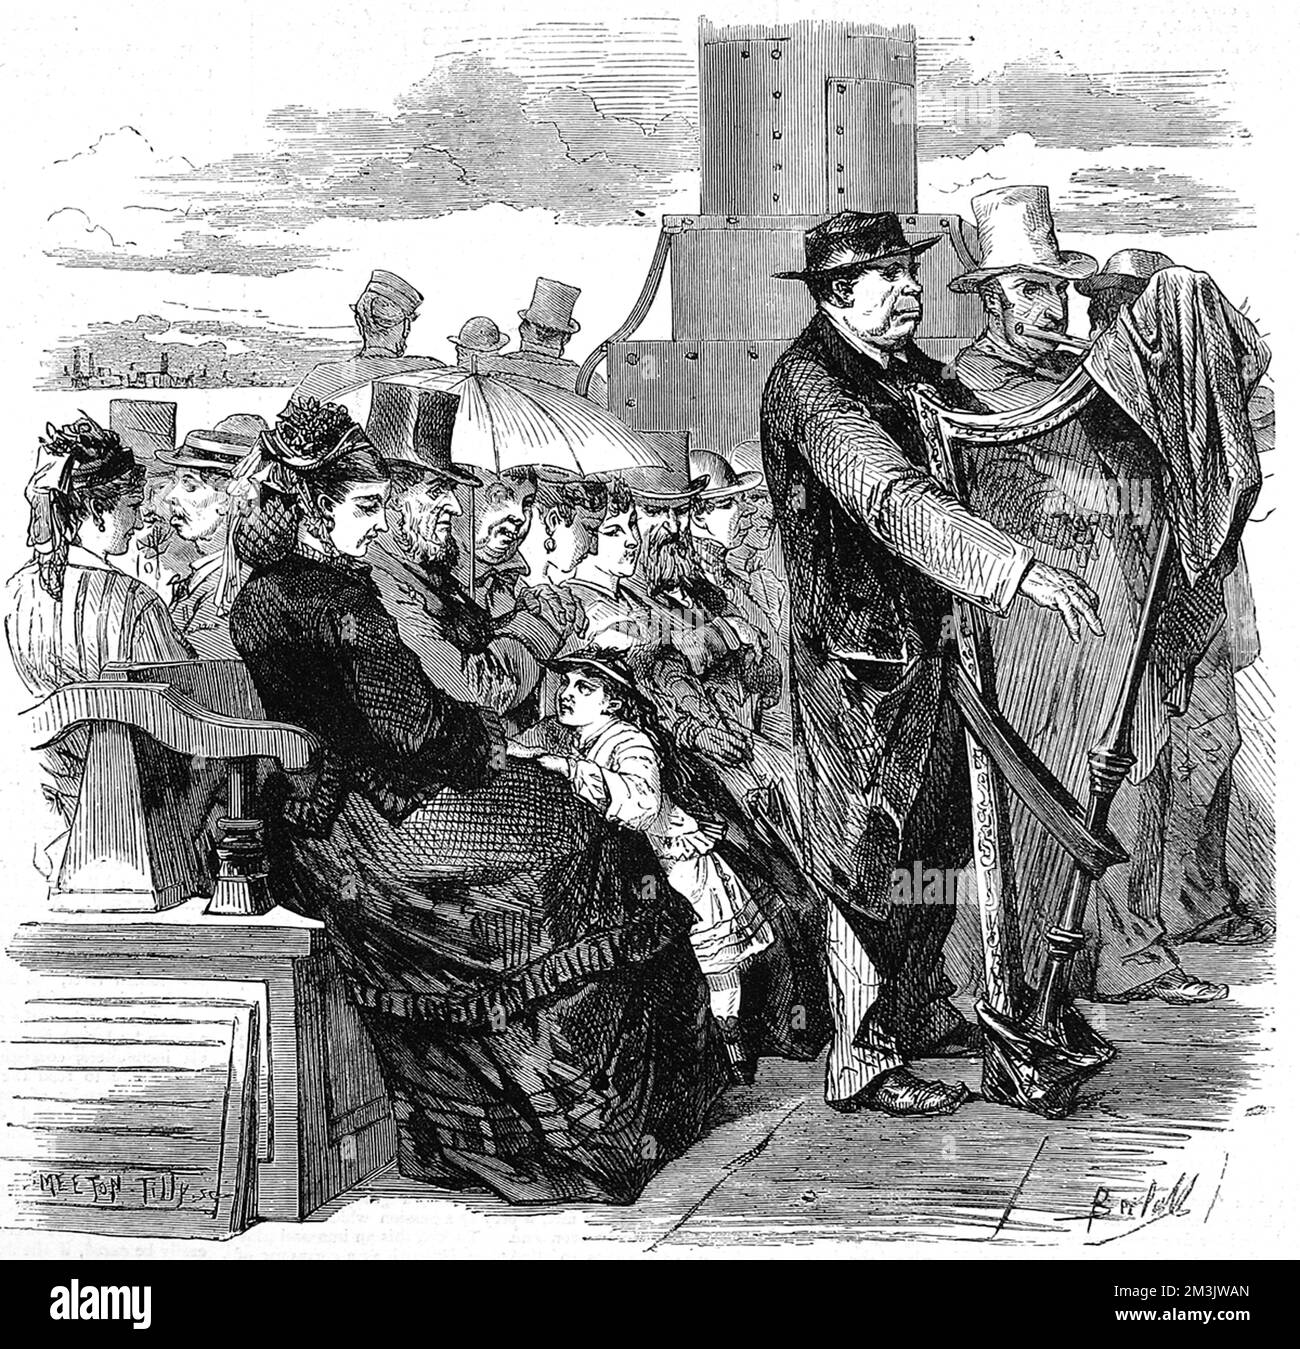 Le pont passager d'un défroisseur de la Tamise, avec plusieurs passagers assis sur des bancs et deux musiciens, jouant la flûte et la harpe. Date: 1874 Banque D'Images